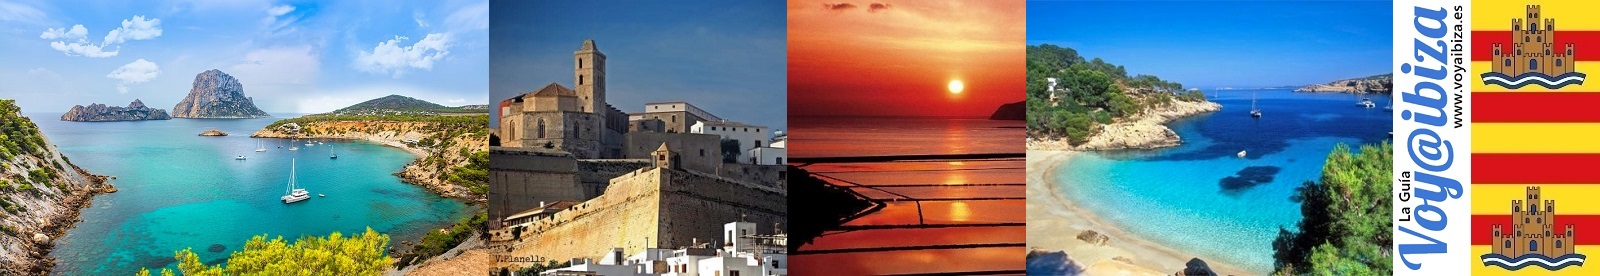 Sitios para visitar en Ibiza